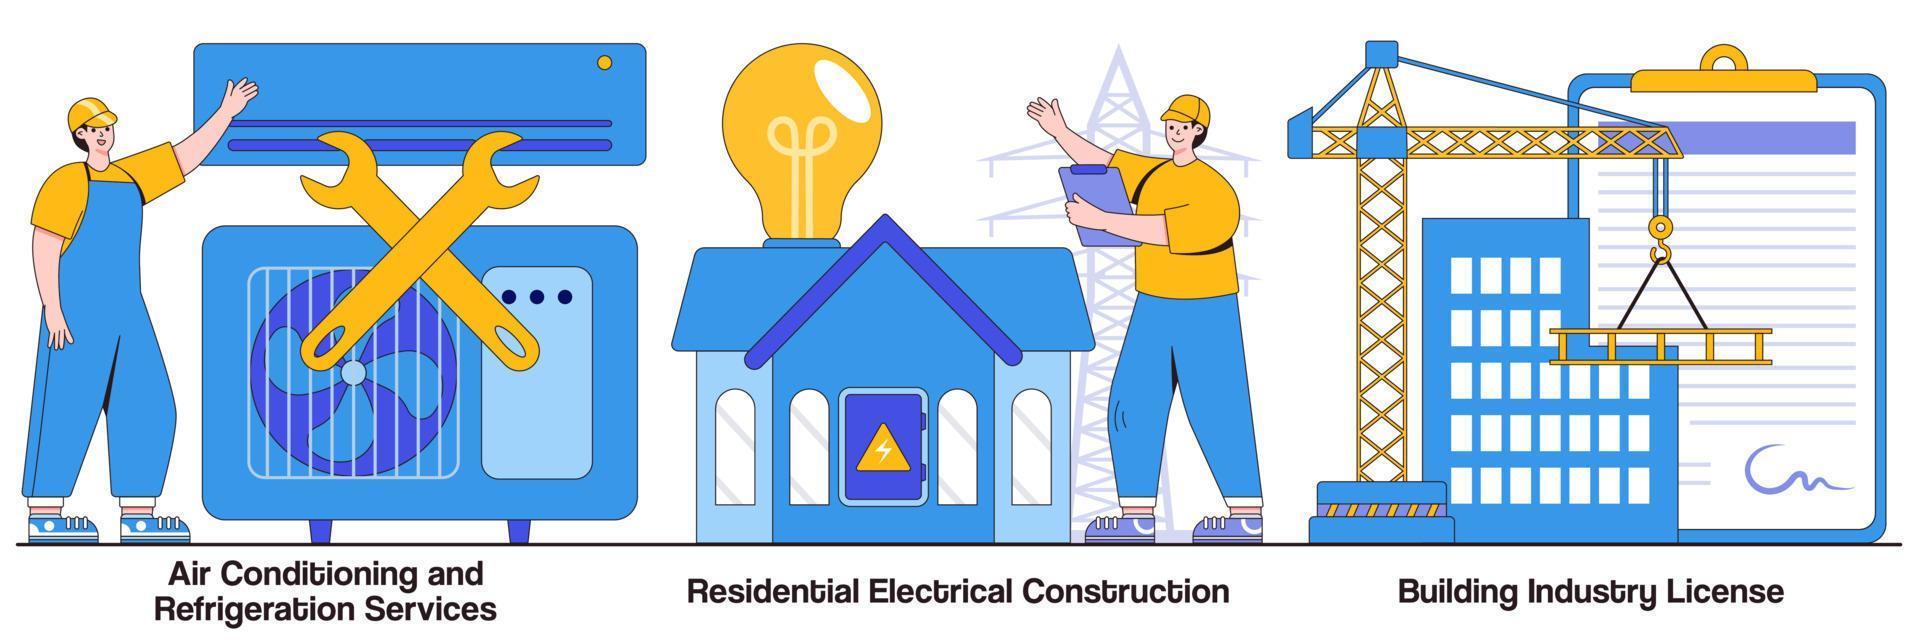 servicios de aire acondicionado y refrigeración, construcción eléctrica residencial, paquete ilustrado de licencia de la industria de la construcción vector